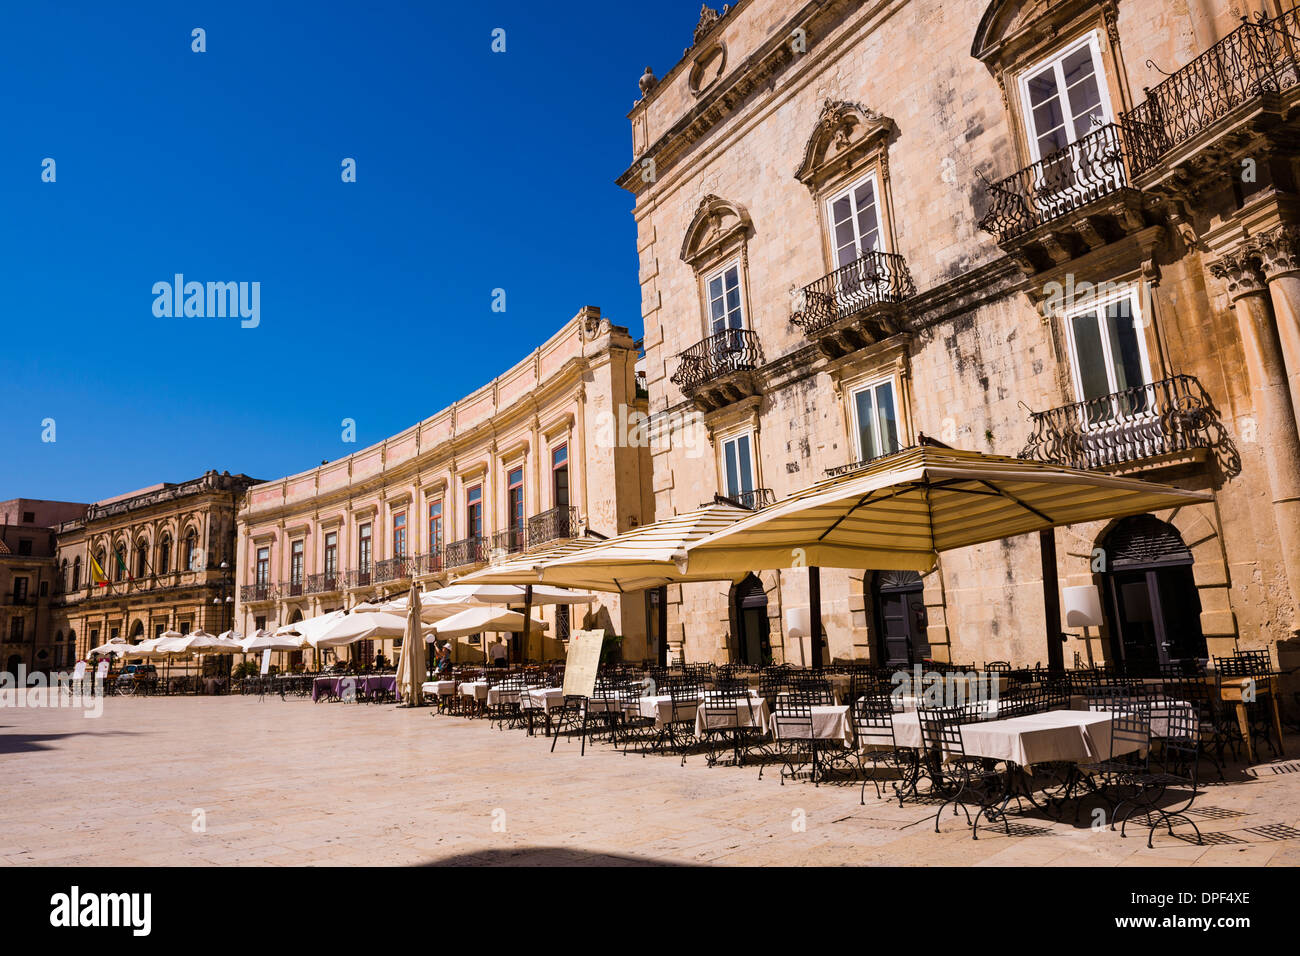 Les cafés de style baroque sicilien bâtiments dans la Piazza Duomo, Ortigia, Syracuse (Syracuse), Sicile, Italie, Europe Banque D'Images